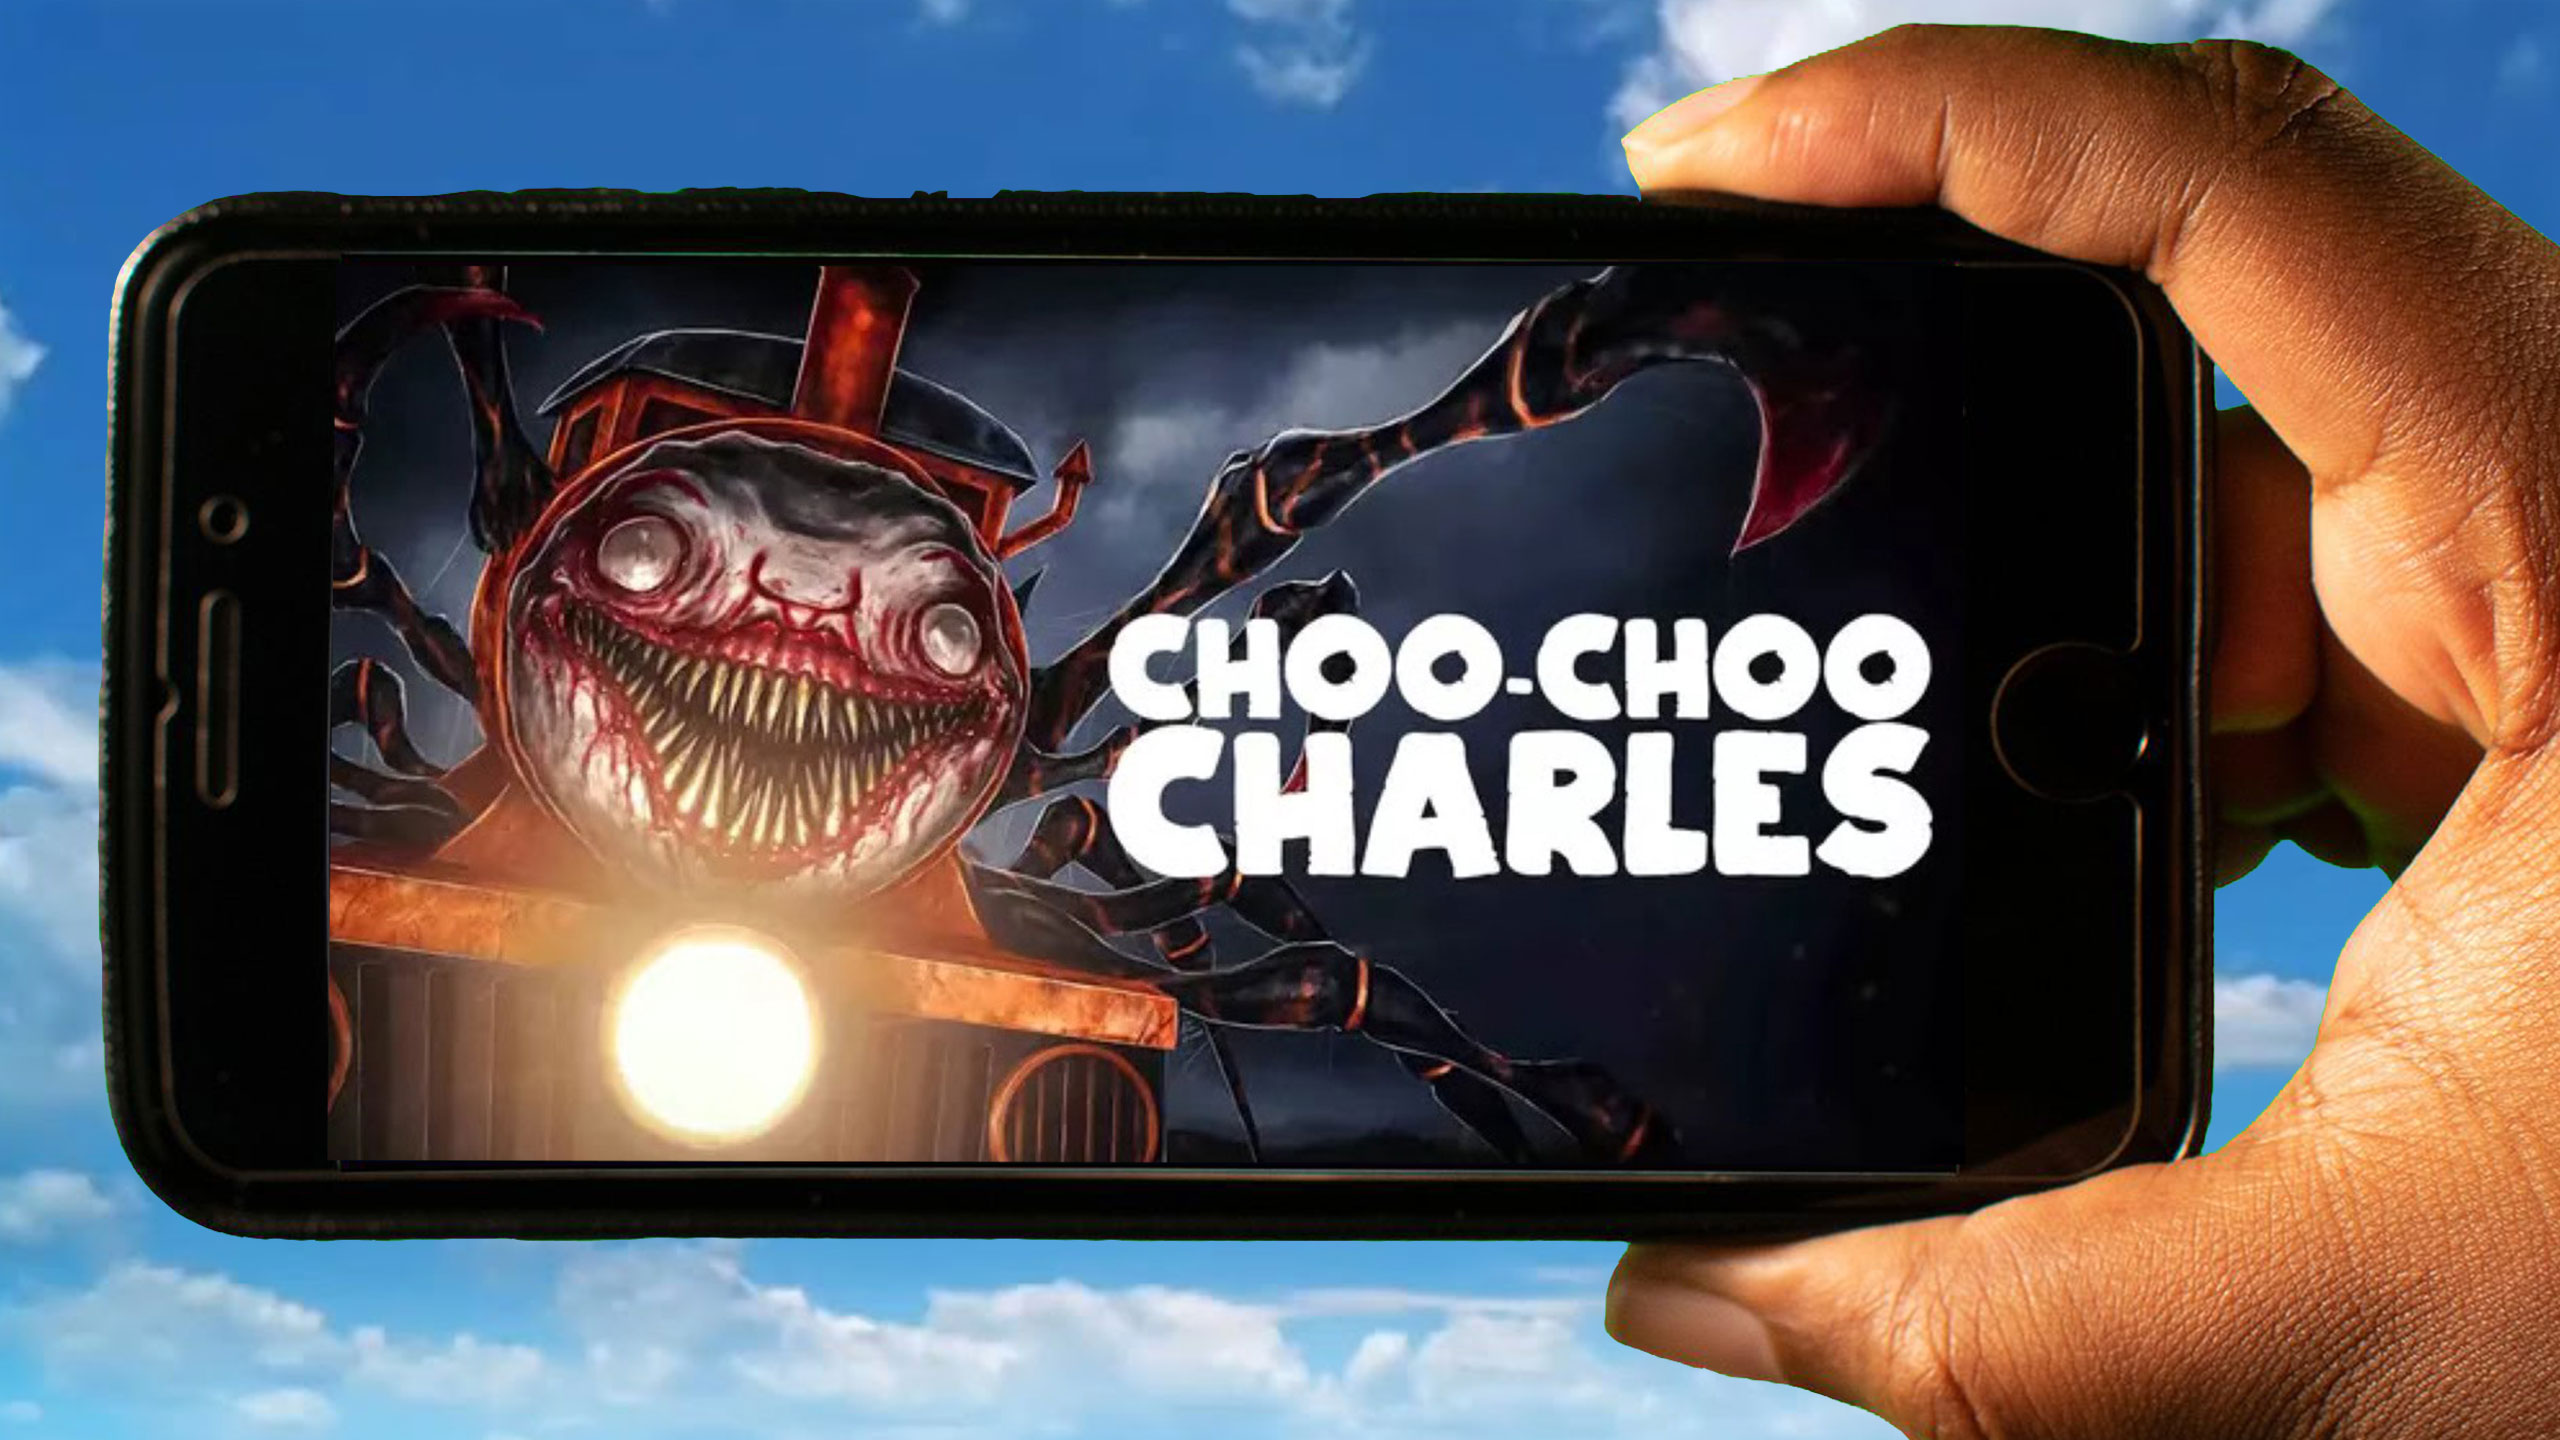 choo choo charles game download